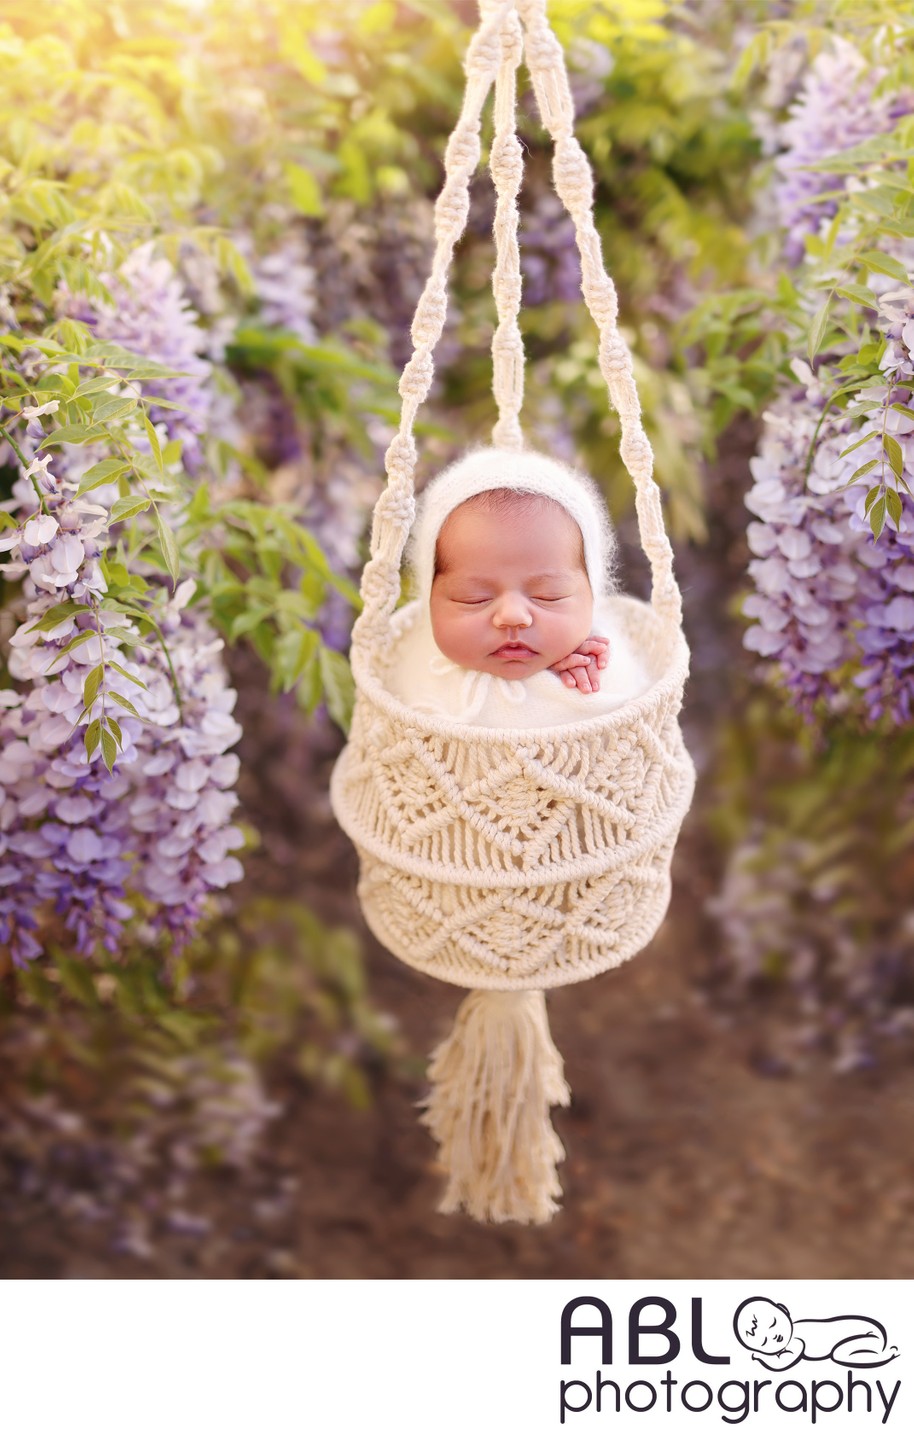 San Diego newborn photos with wisteria flowers